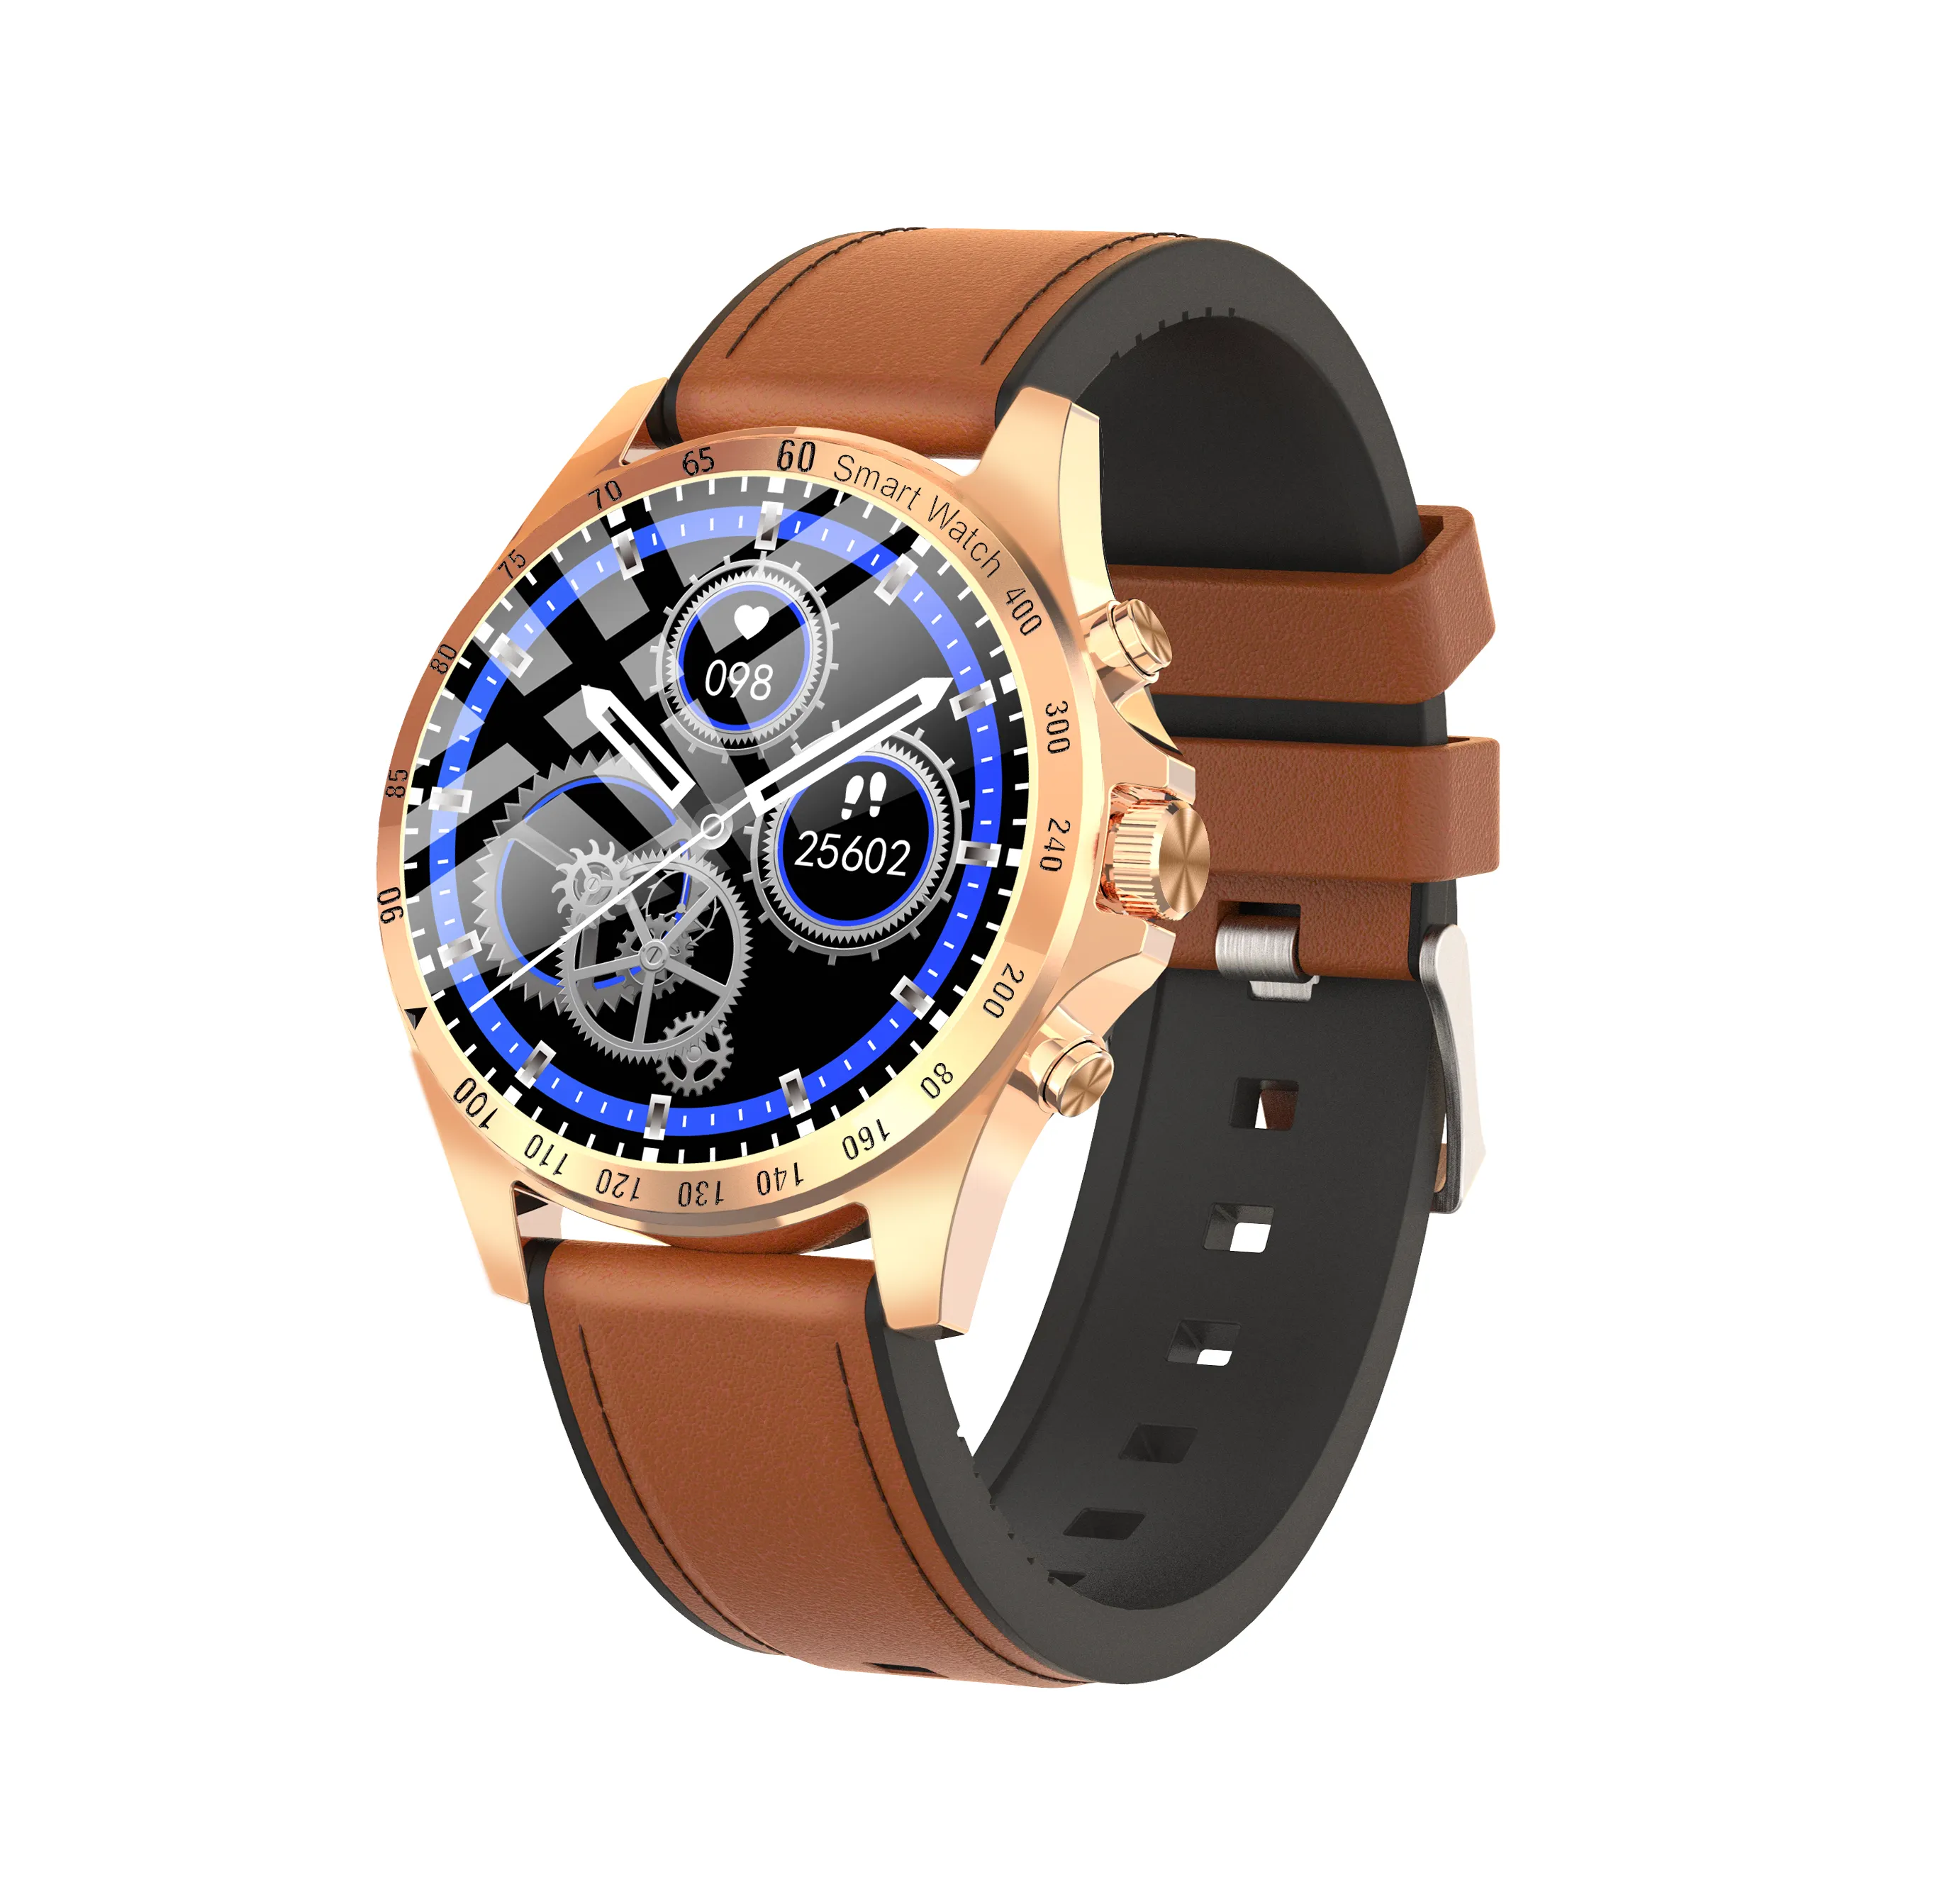 Relógio smartwatch lw09, relógio inteligente, bússola, barômetro, a prova d' água ip67, ios, android, monitoramento de atividades esportivas, direto de fábrica amazon